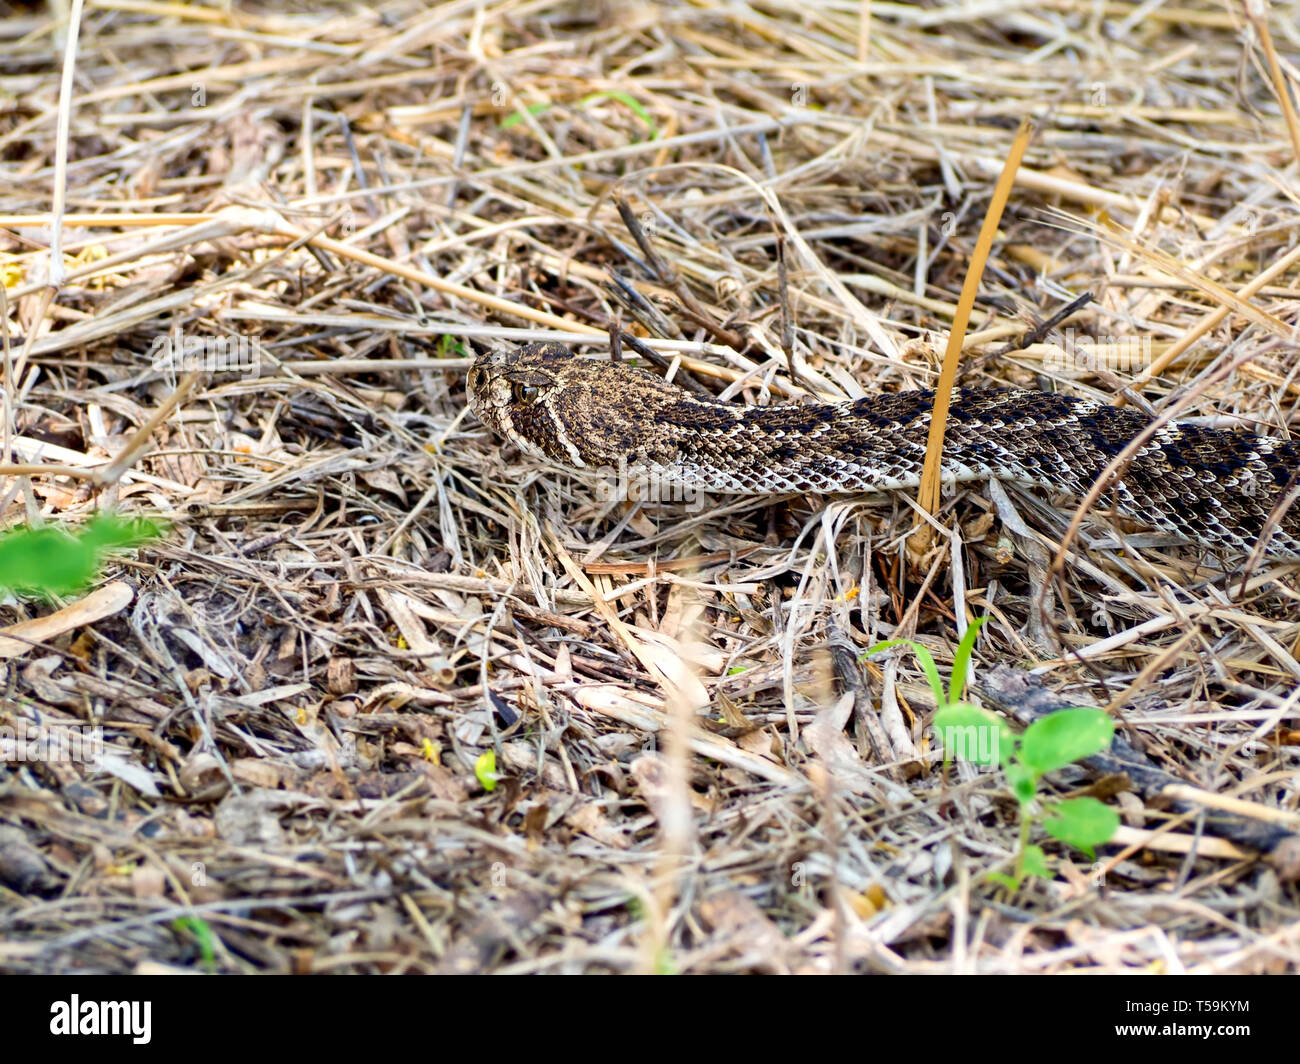 La testa e il collo di un Western diamondback rattlesnake in erba secca al Oso Bay Zone Umide preservare & Learning Center di Corpus Christi nel Texas, Stati Uniti d'America. Foto Stock